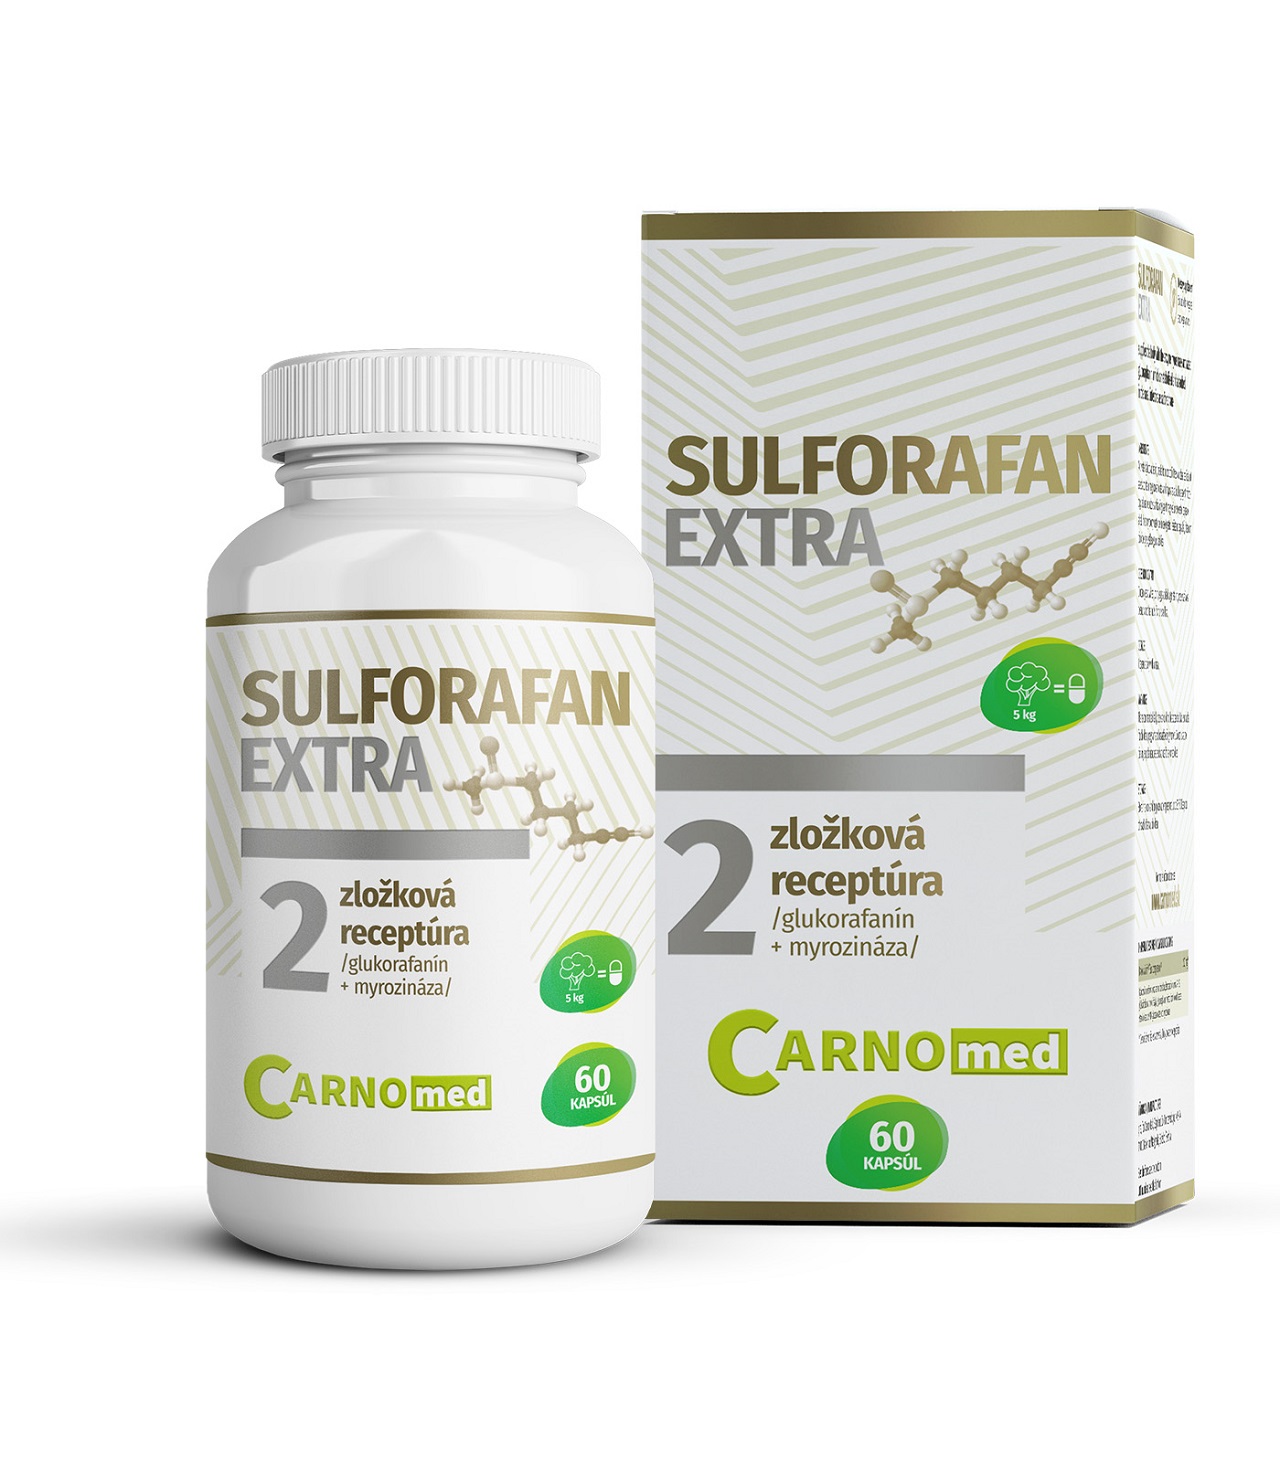 Sulforafan EXTRA